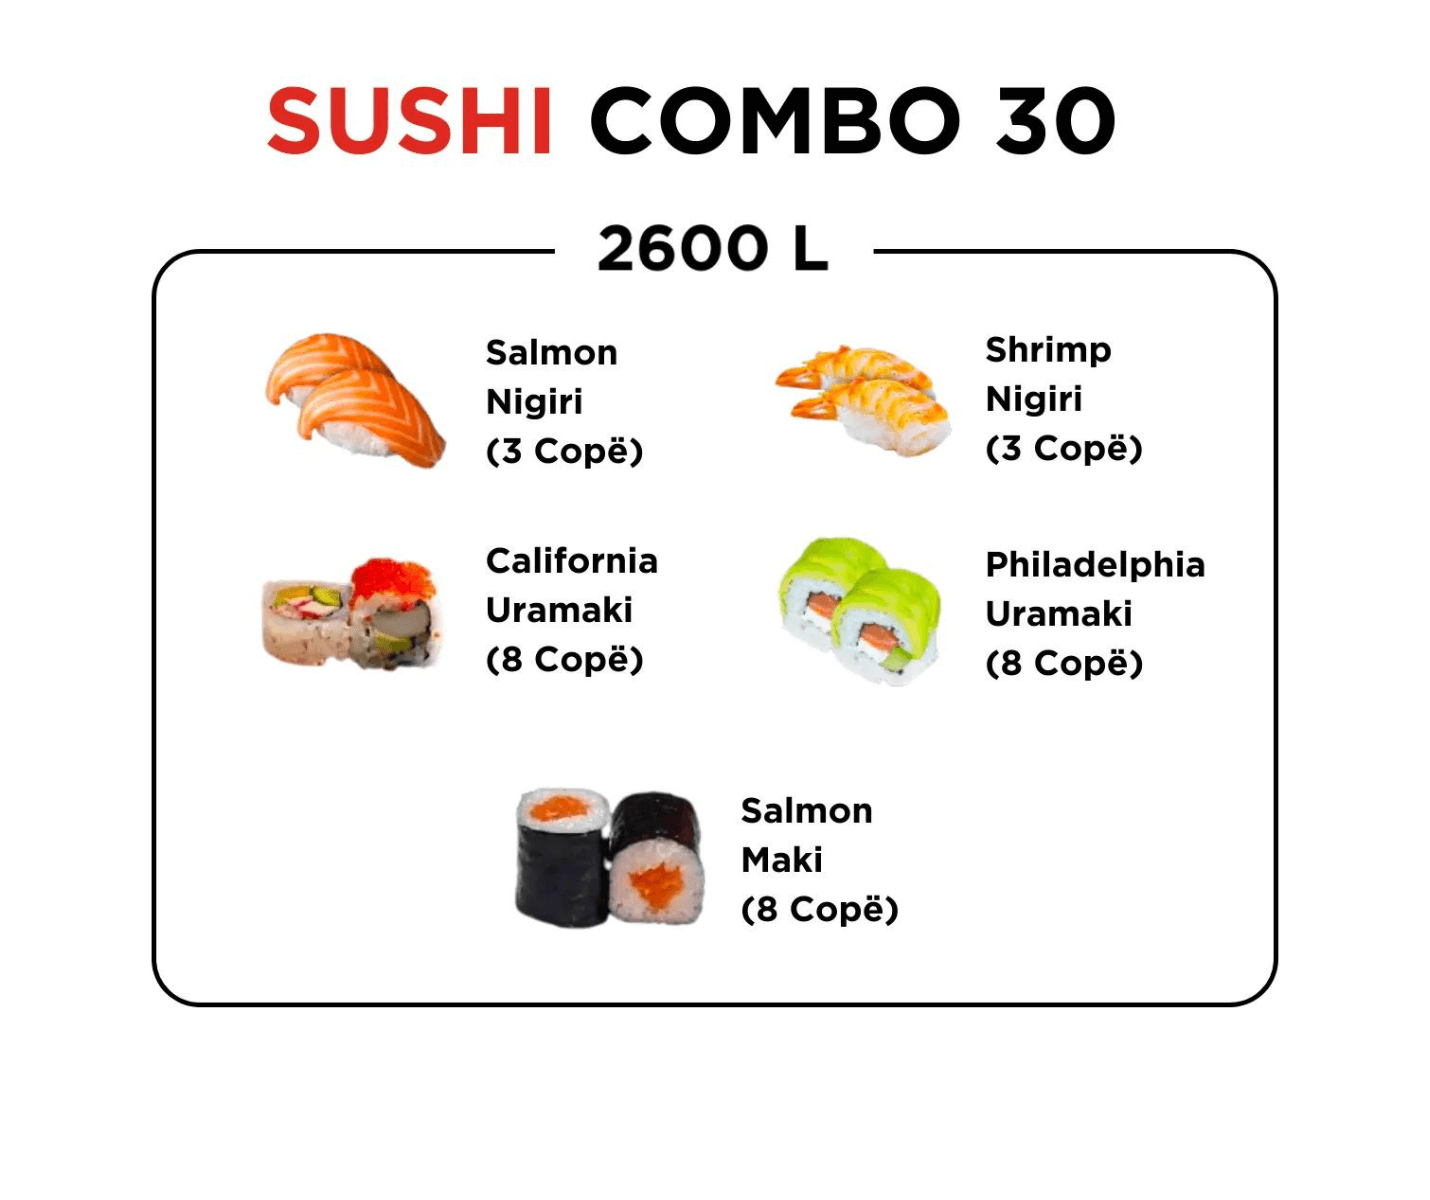 Sushi Combo 30